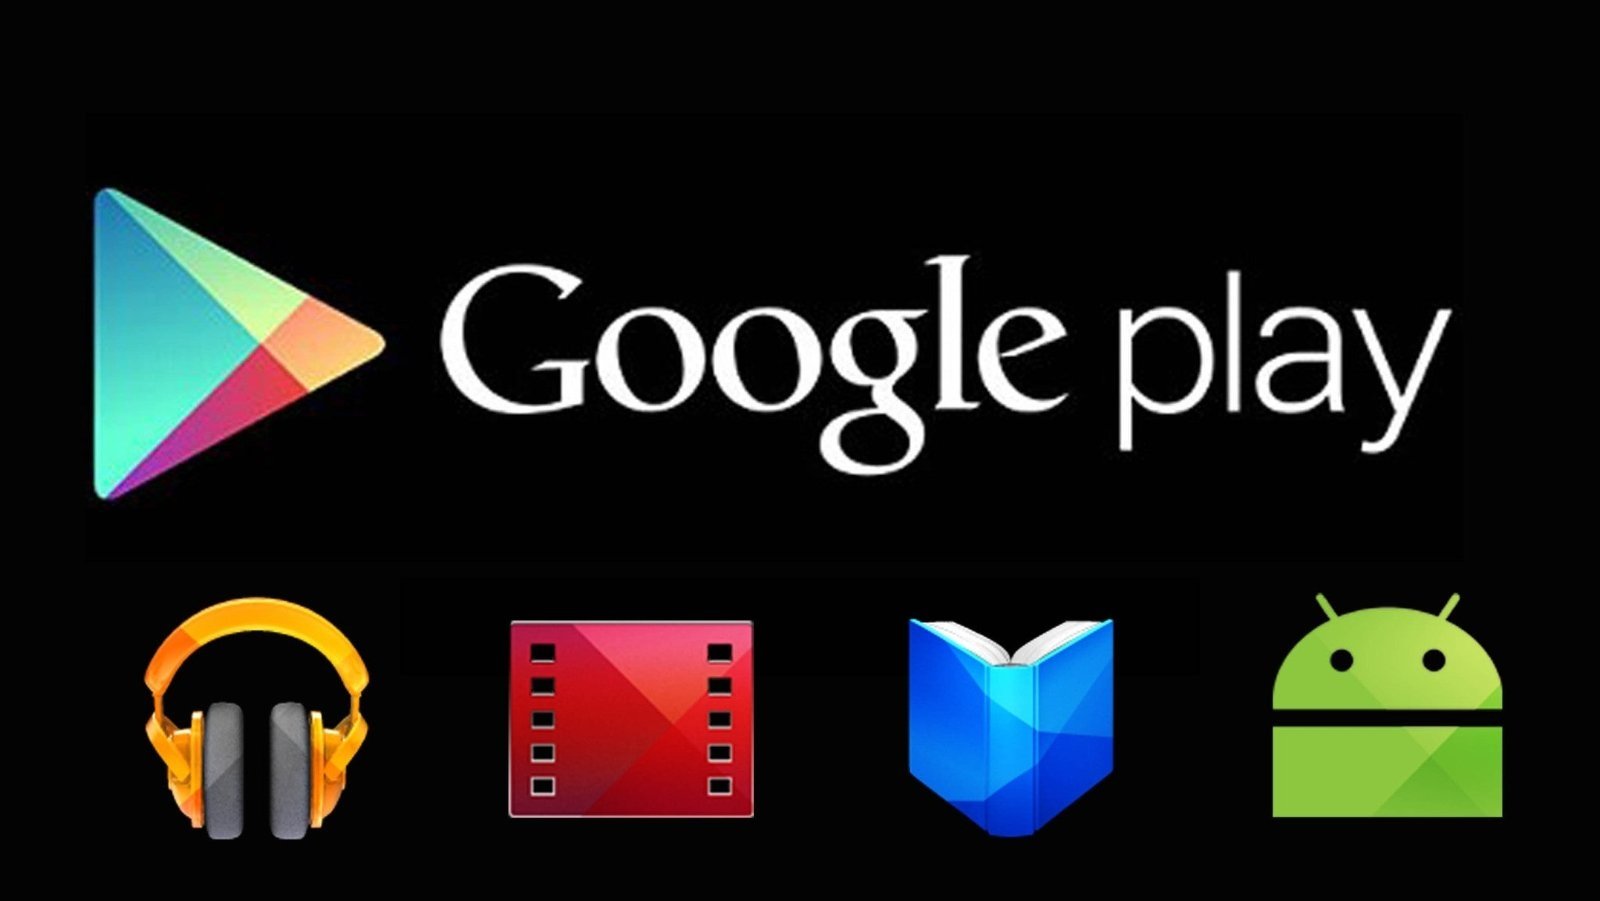 Iconos de la Google Play